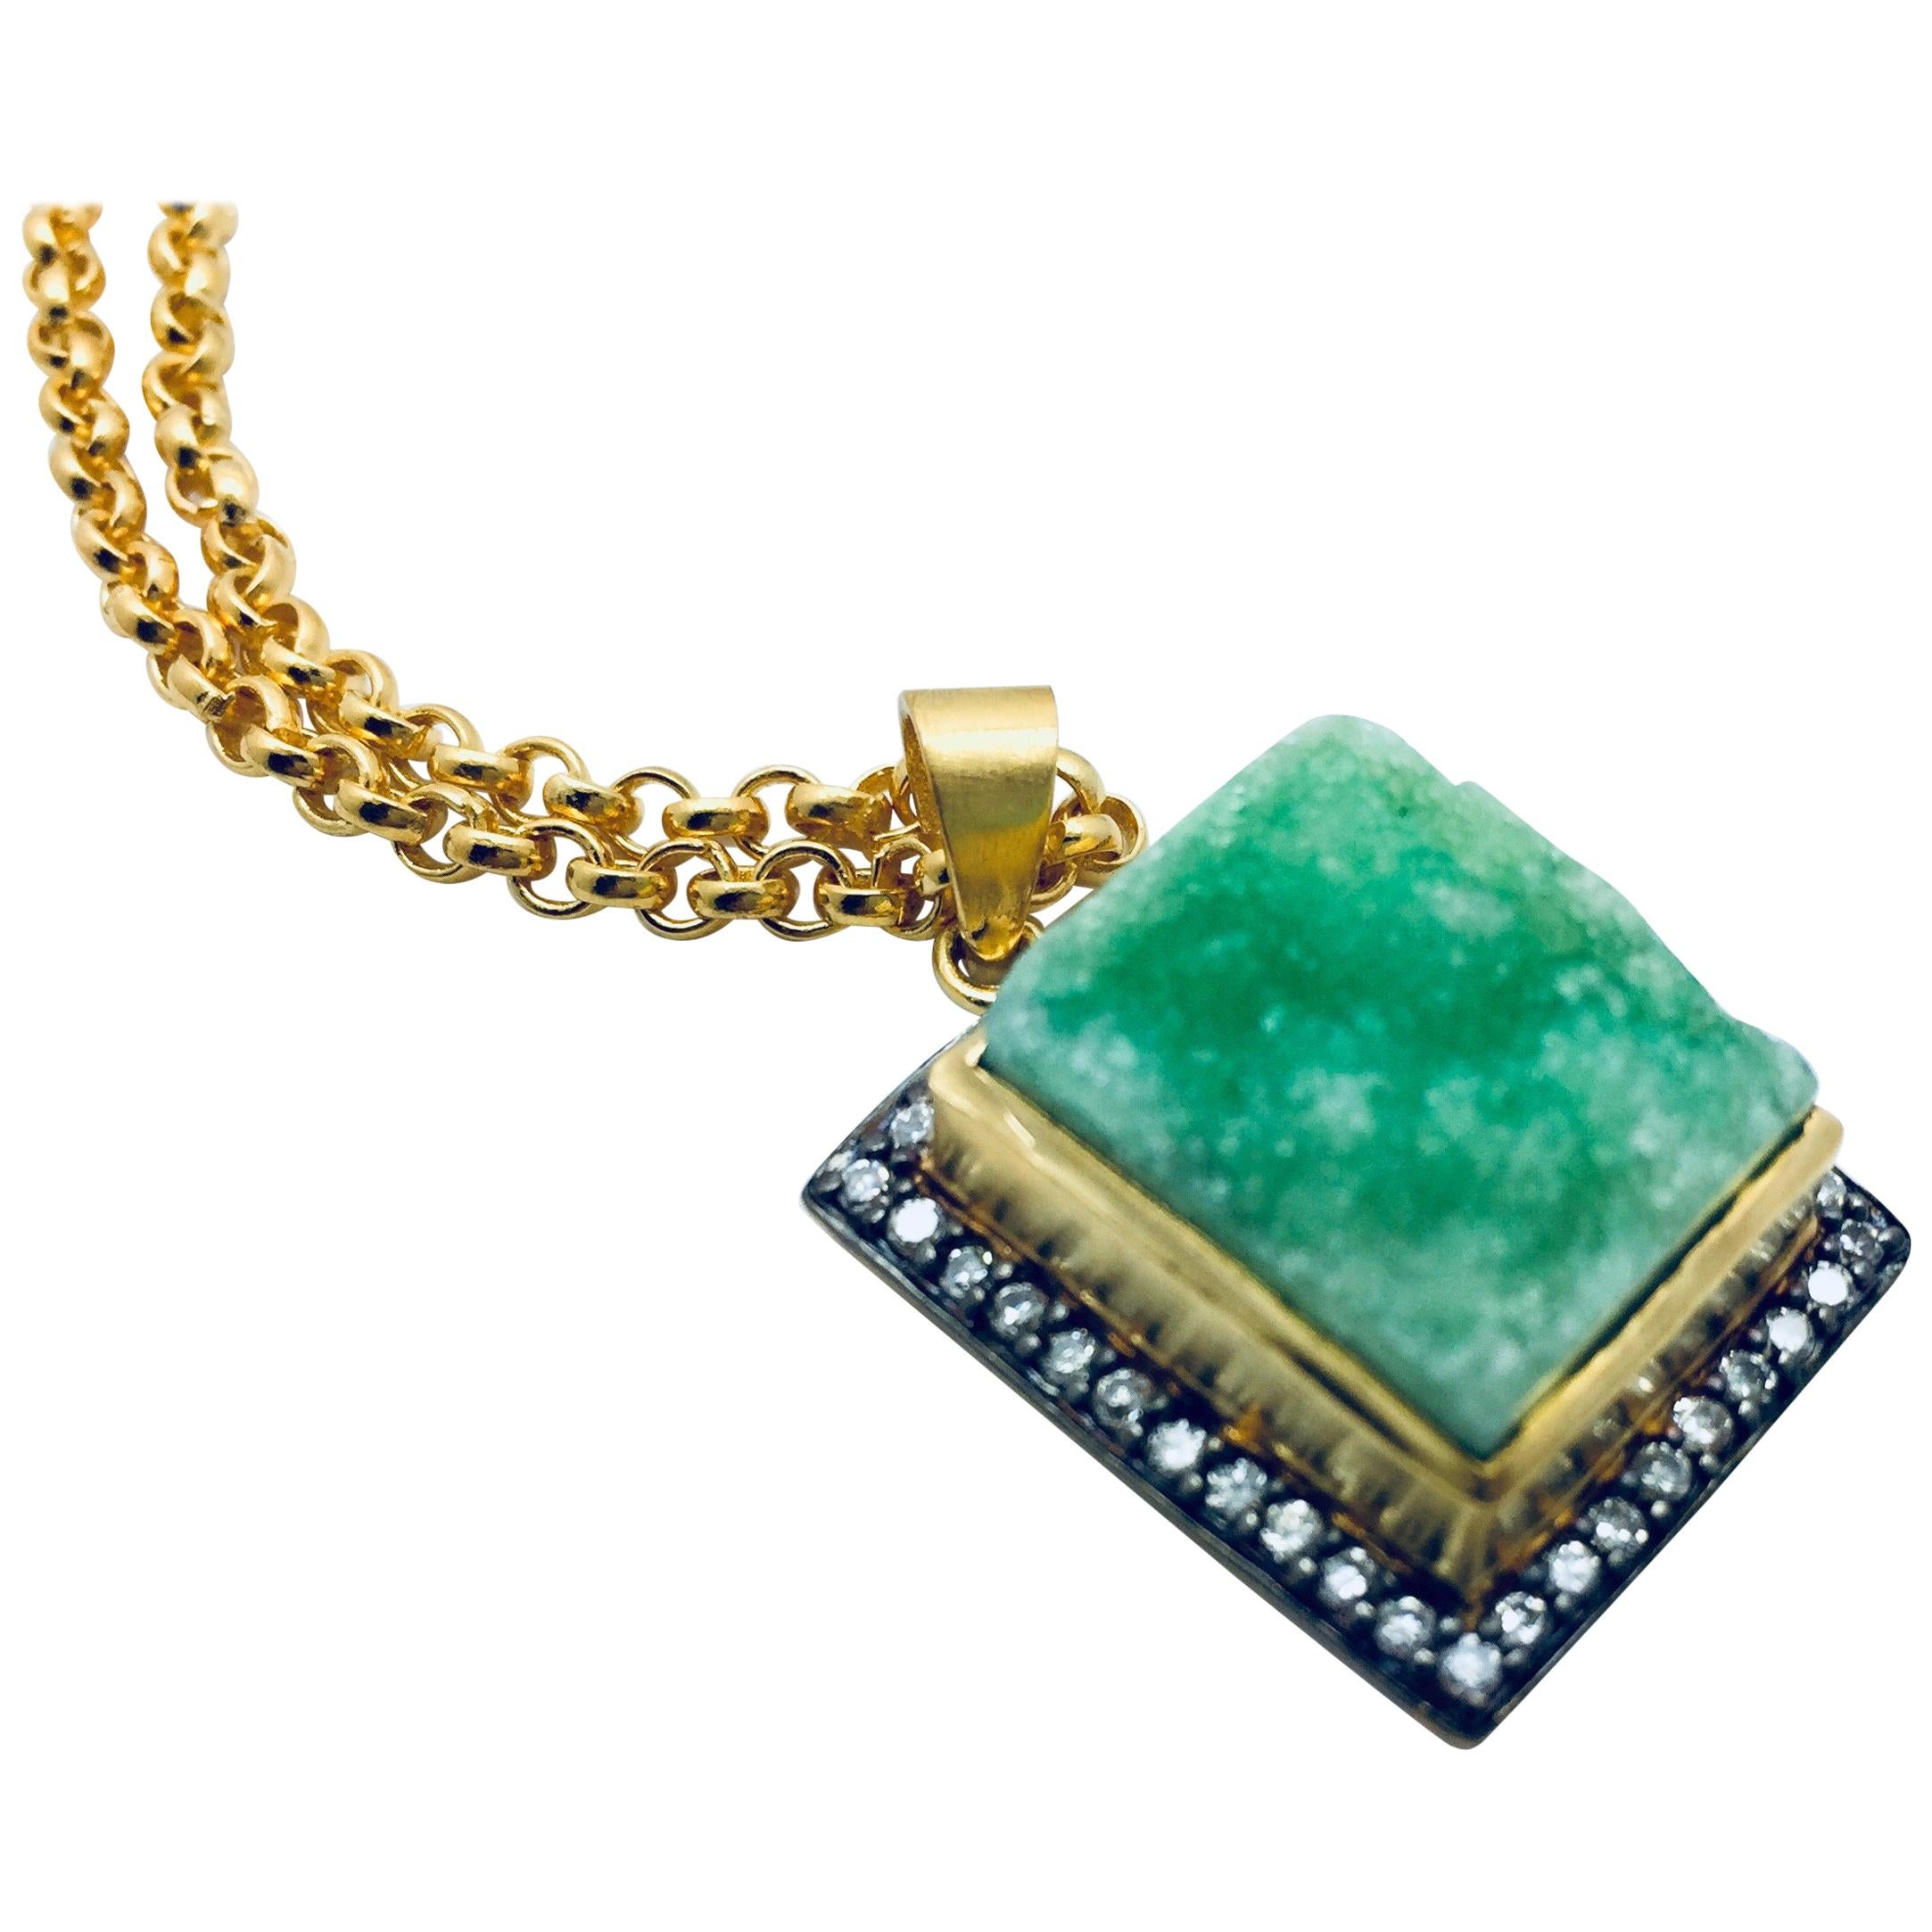 Geode Druzy Meghna Jewels Textured Necklace